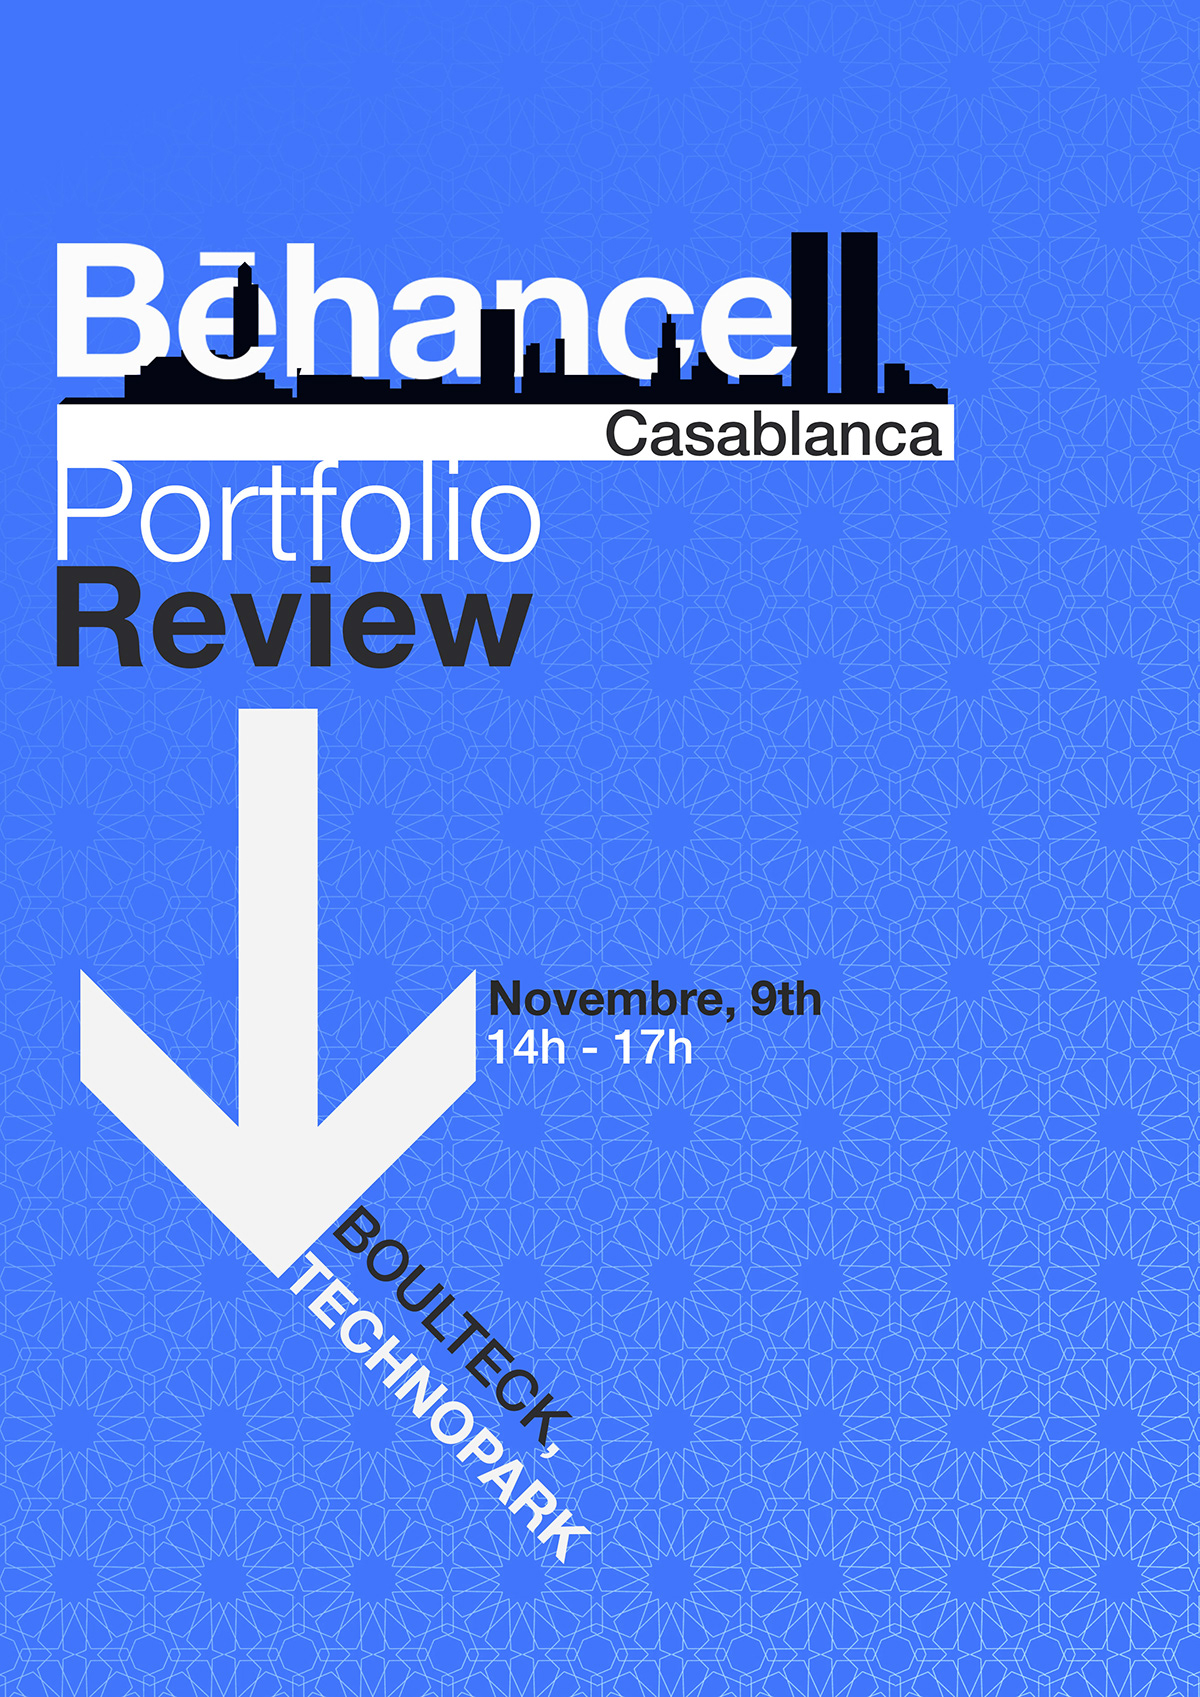 Cabalanca porfolio reviews behance portfolio review